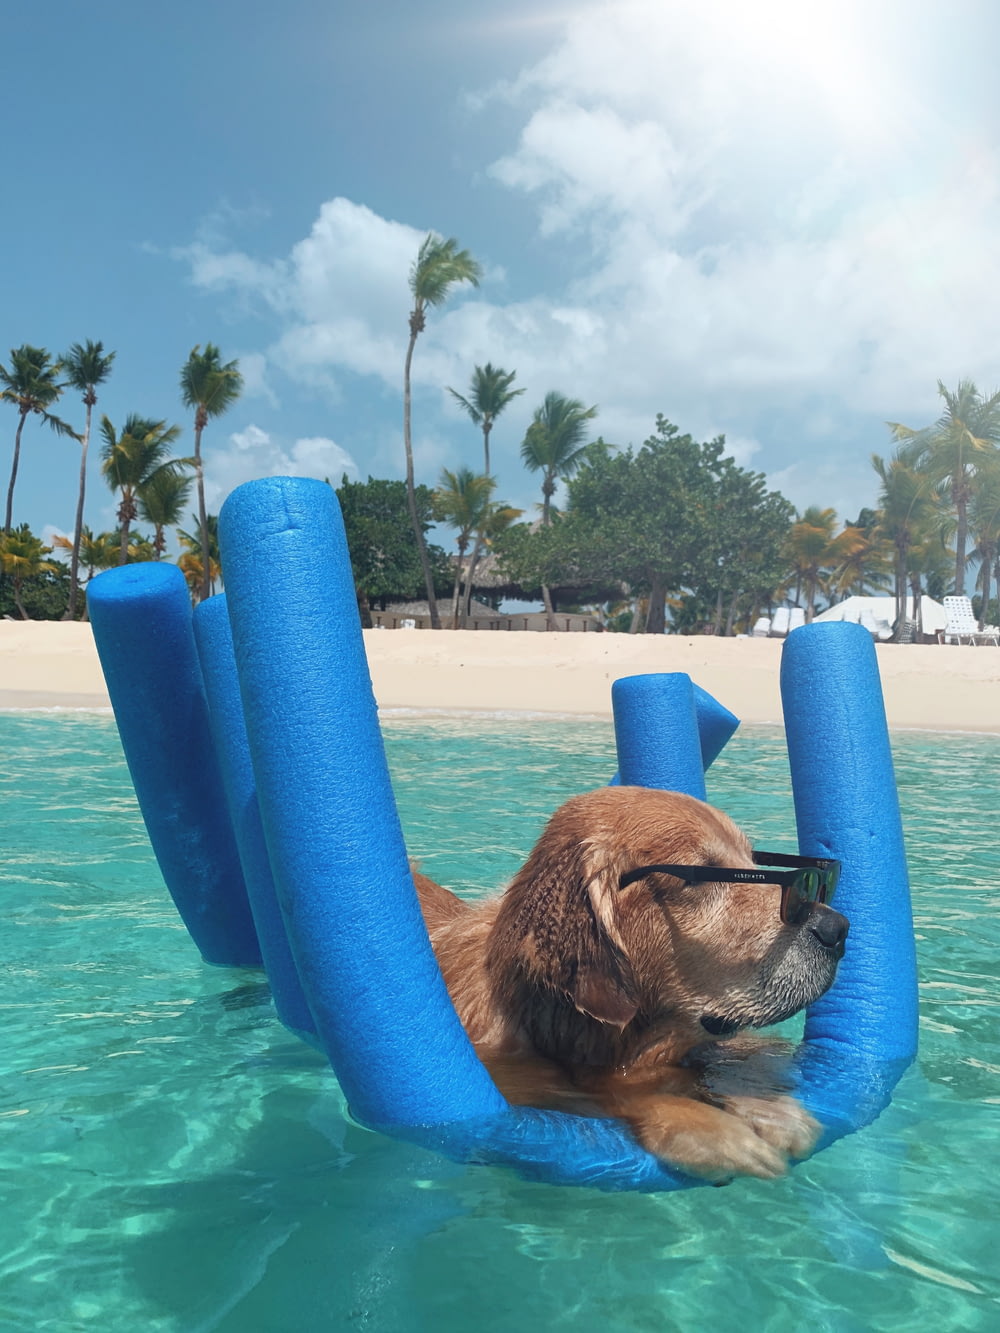 brauner kurzhaariger Hund tagsüber im blauen aufblasbaren Pool